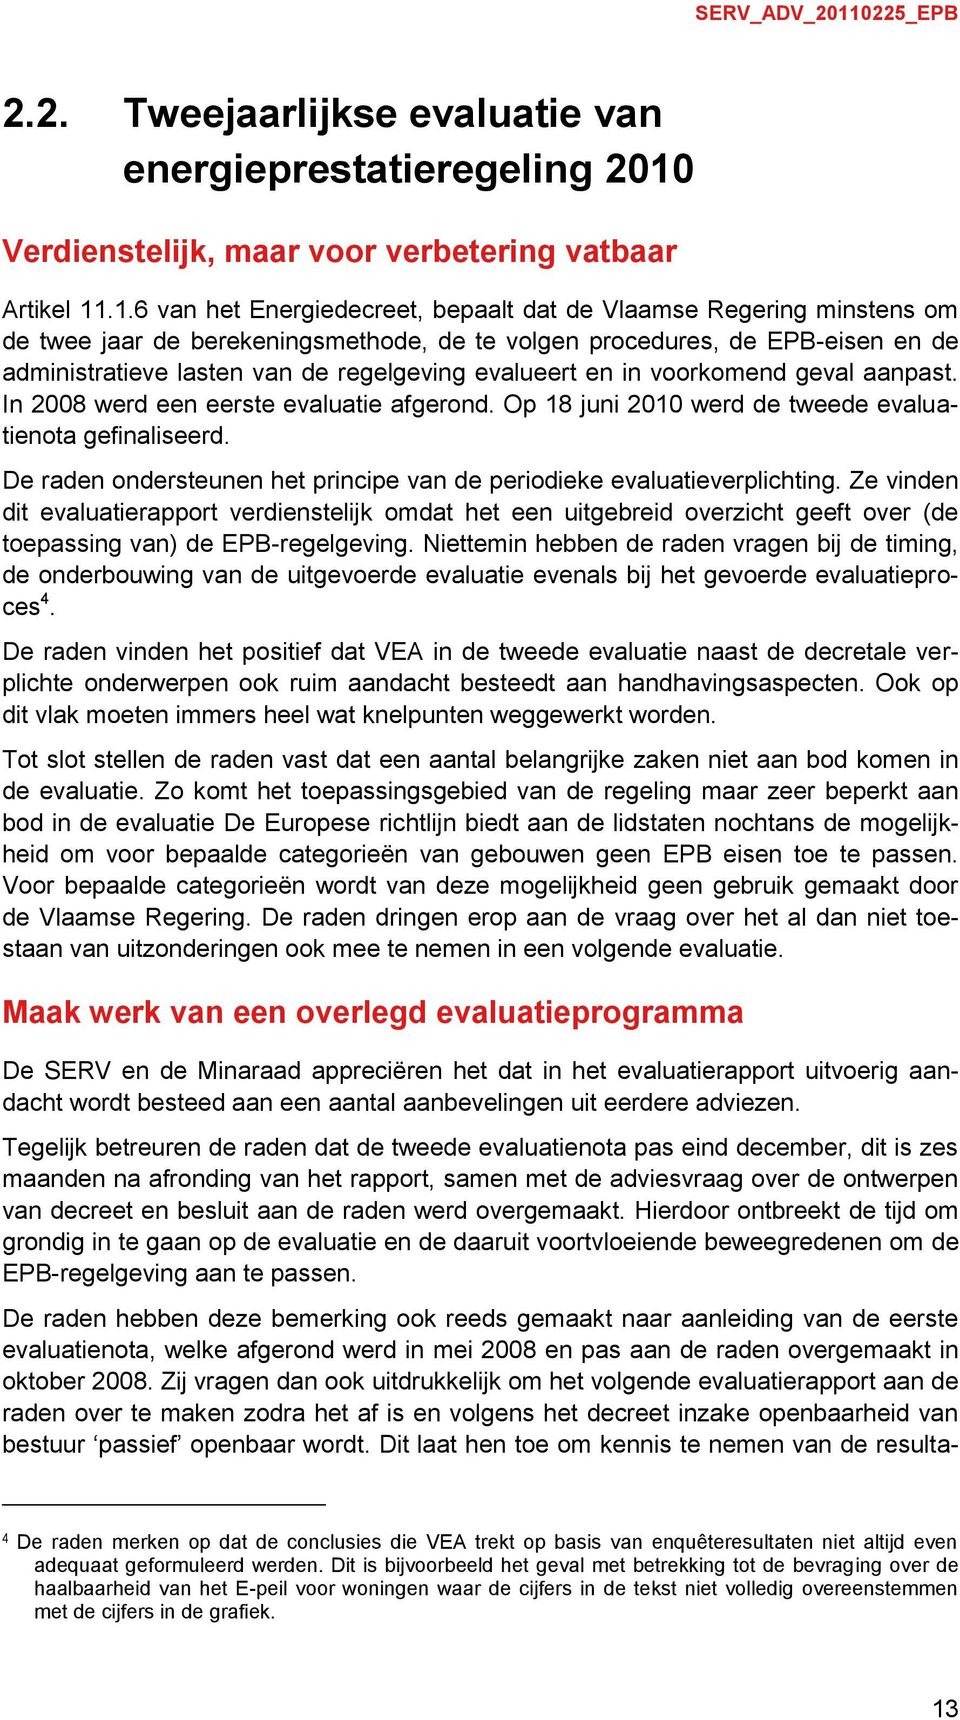 .1.6 van het Energiedecreet, bepaalt dat de Vlaamse Regering minstens om de twee jaar de berekeningsmethode, de te volgen procedures, de EPB-eisen en de administratieve lasten van de regelgeving